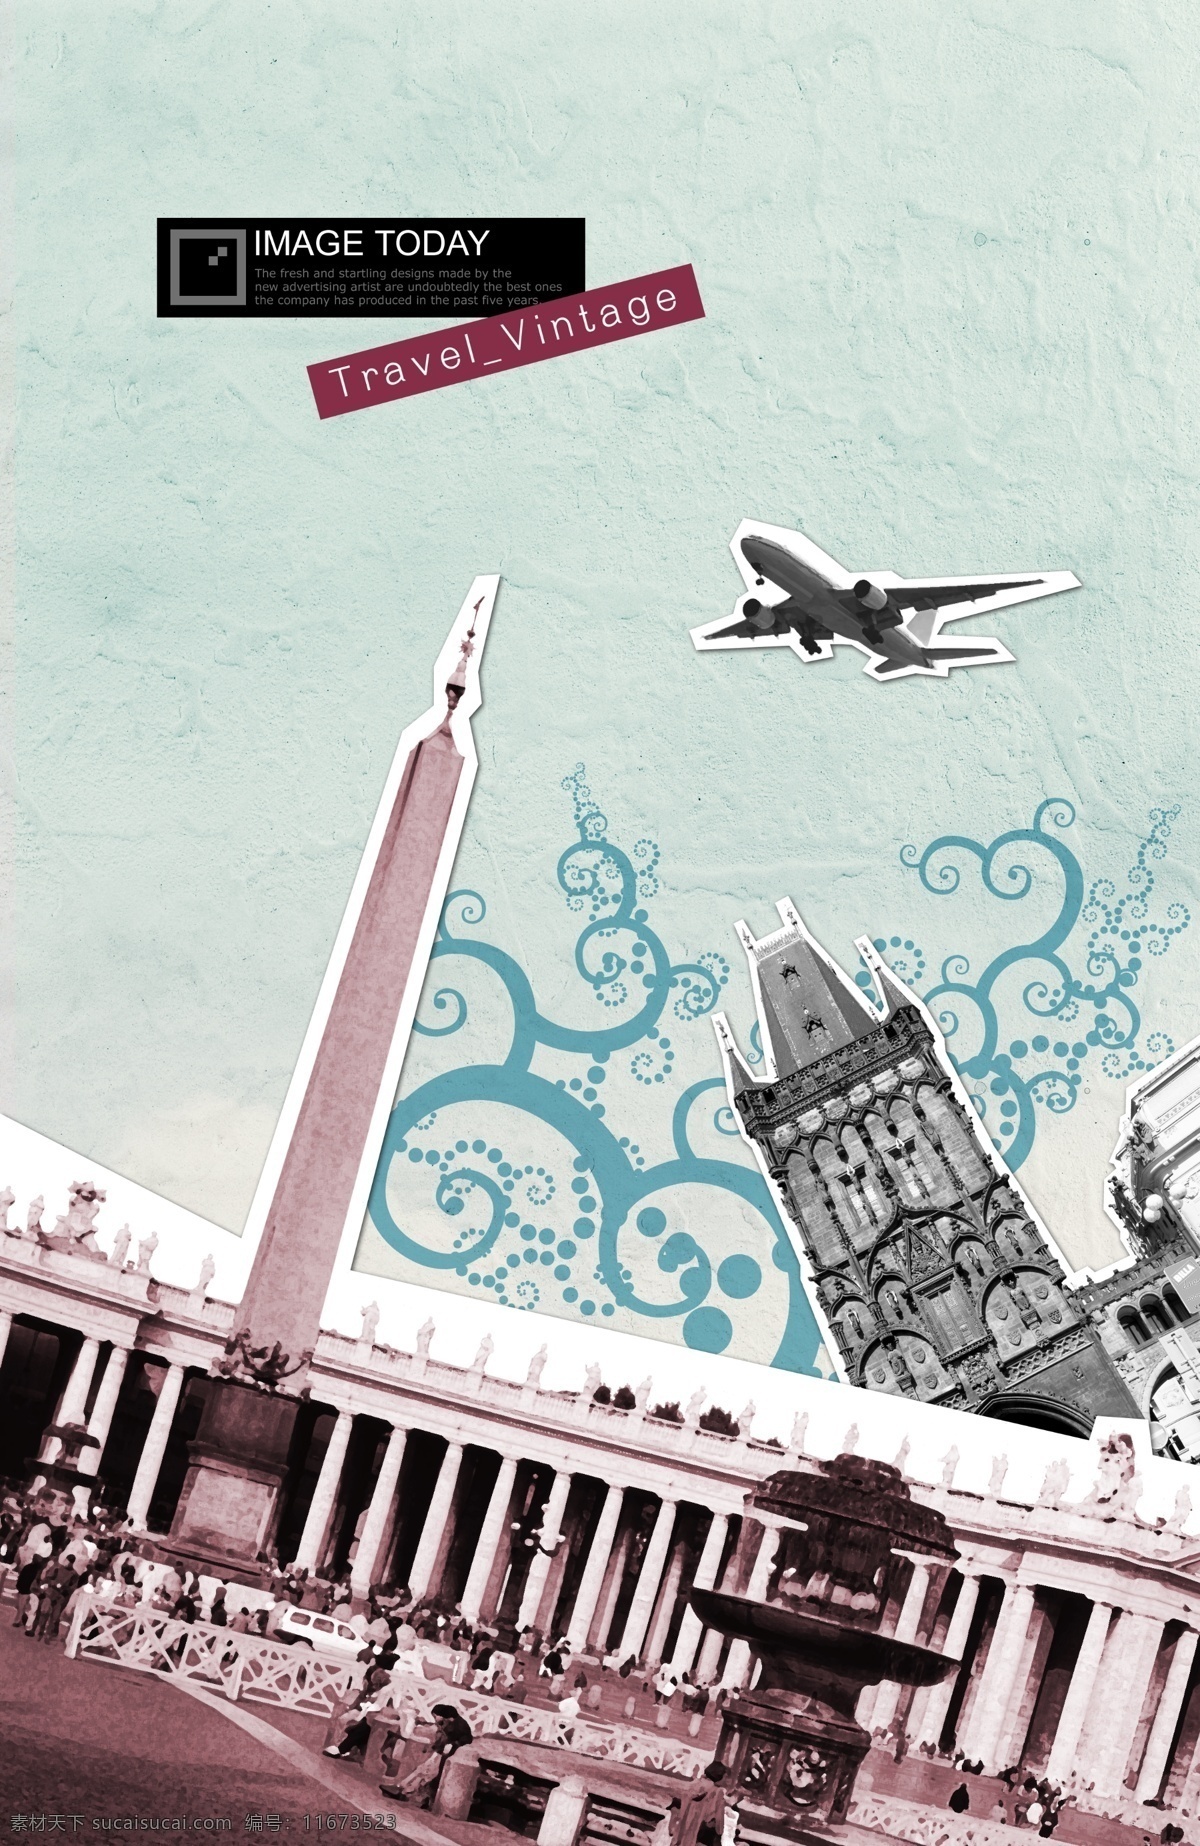 欧洲 古典 建筑 飞机 psd素材 古典建筑 卷曲花纹 客机 旅行 欧洲建筑 psd源文件